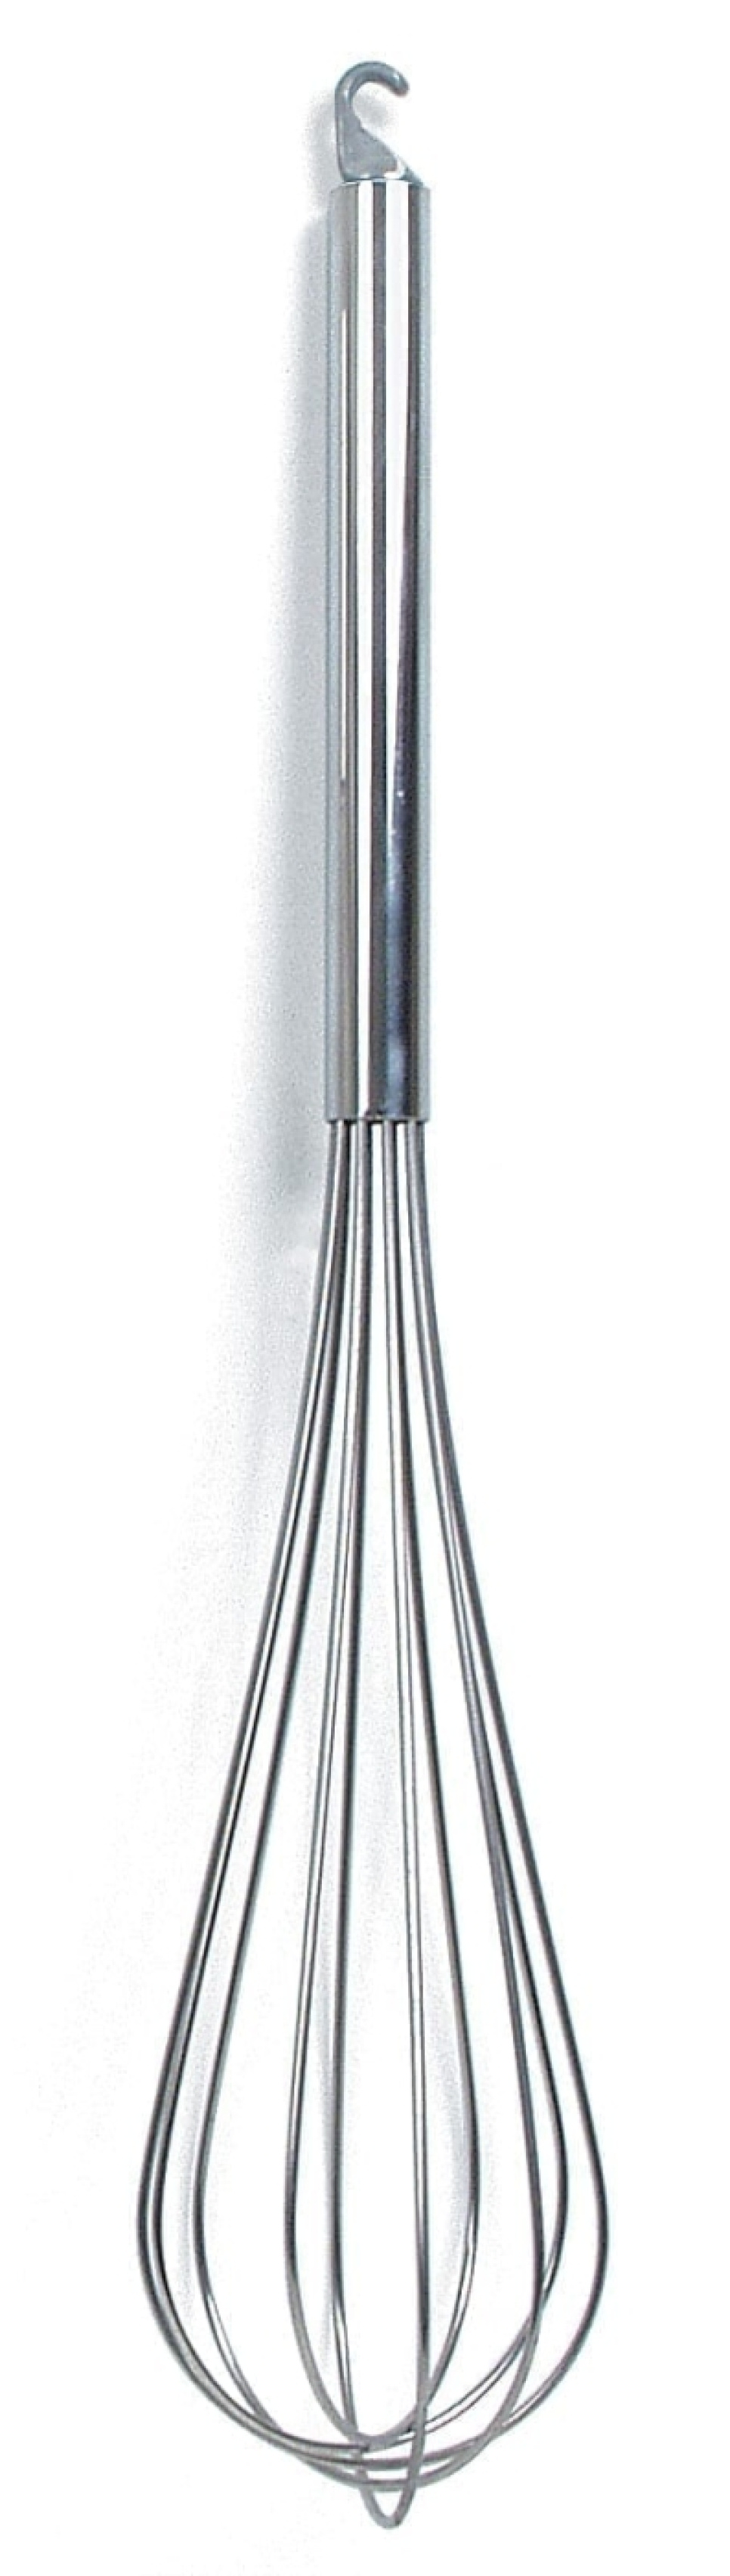 Trzepaczka, 50 cm - Exxent w grupie Gotowanie / Przybory kuchenne / Trzepaczki w The Kitchen Lab (1071-10161)